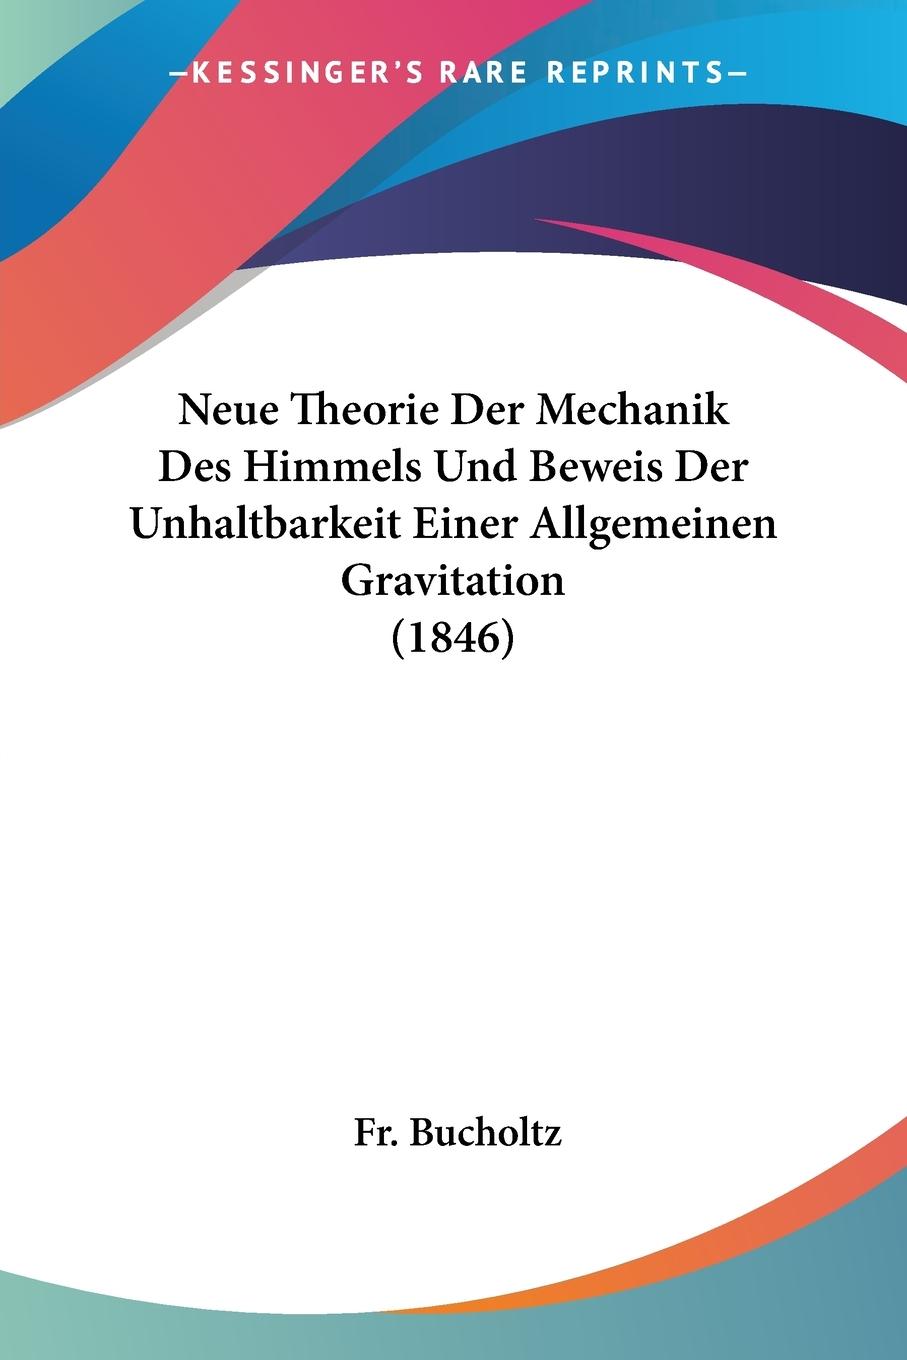 Neue Theorie Der Mechanik Des Himmels Und Beweis Der Unhaltbarkeit Einer Allgemeinen Gravitation (1846) - Bucholtz, Fr.